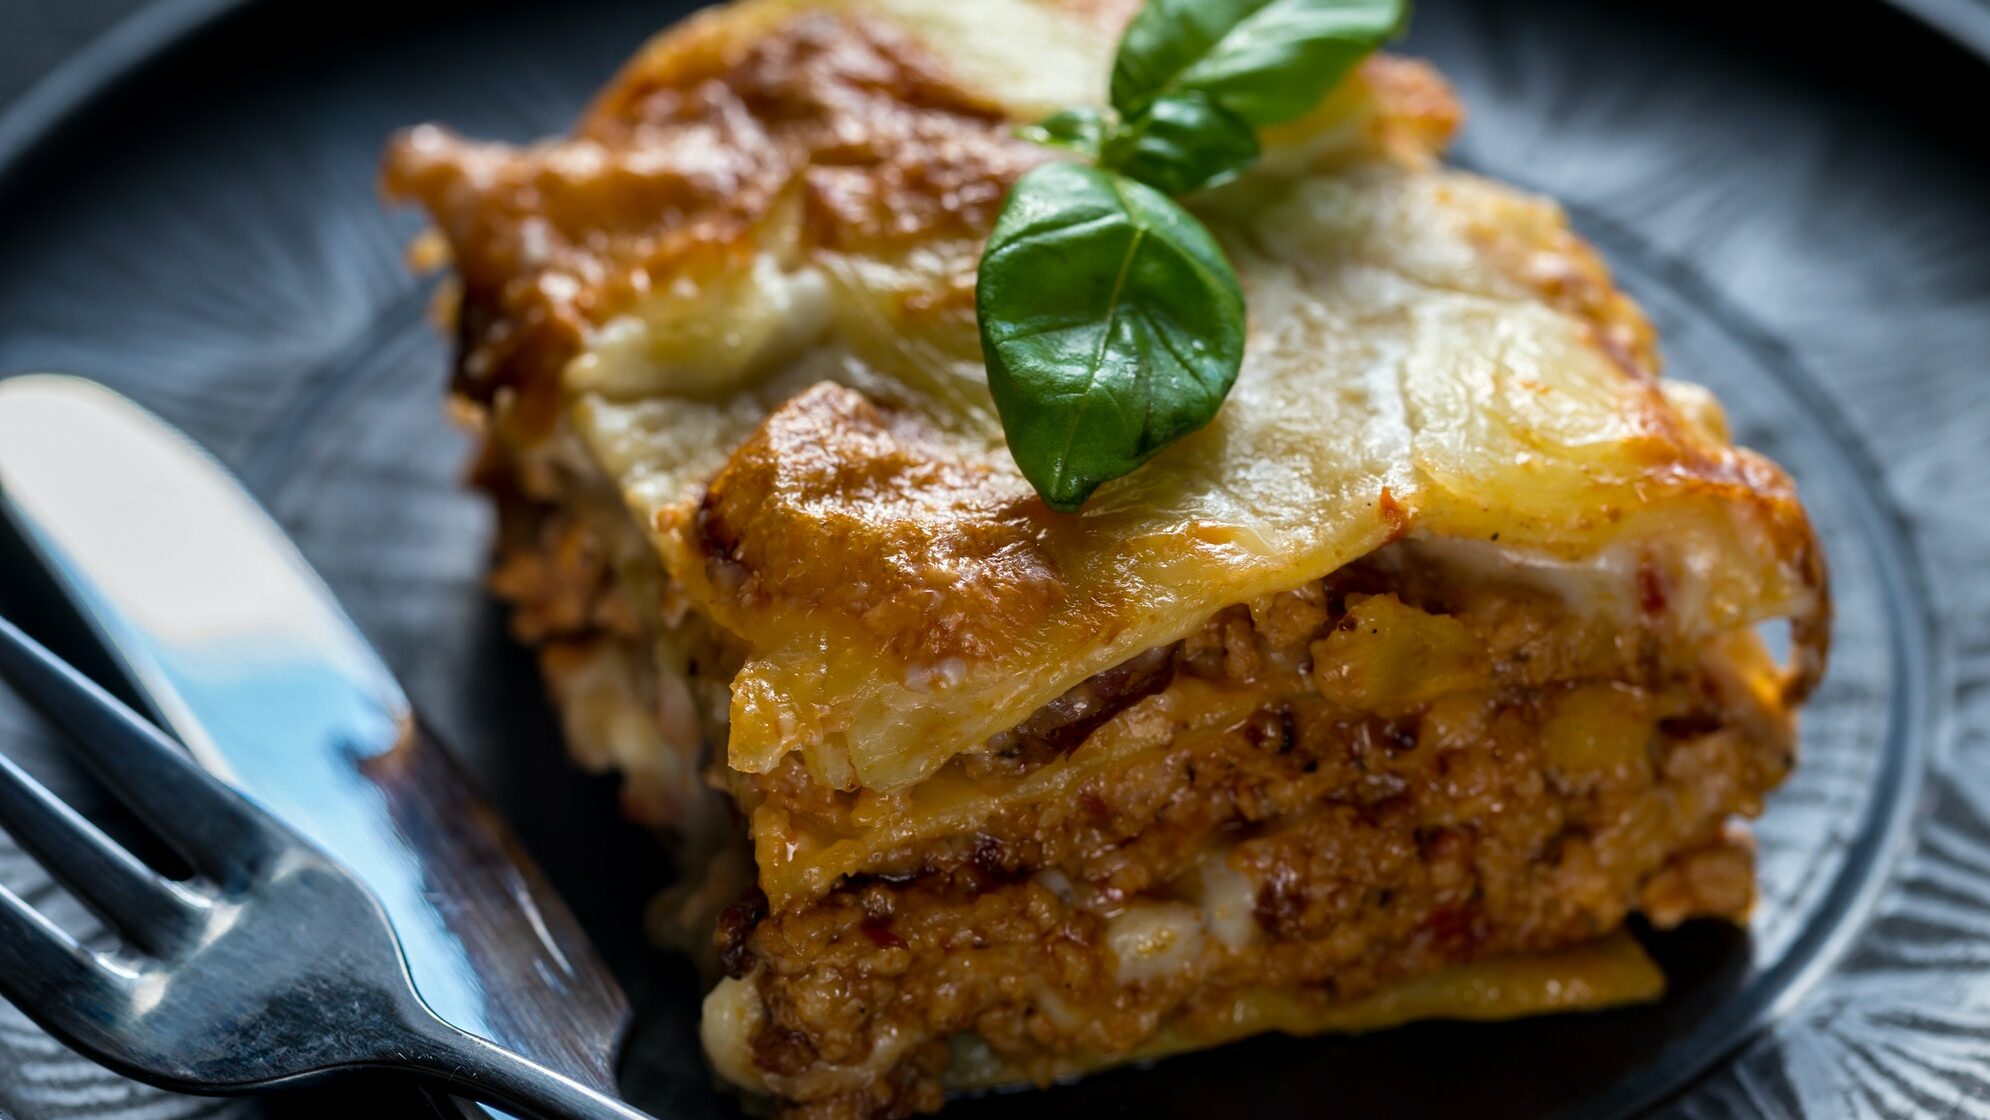 Lasagna with pesto